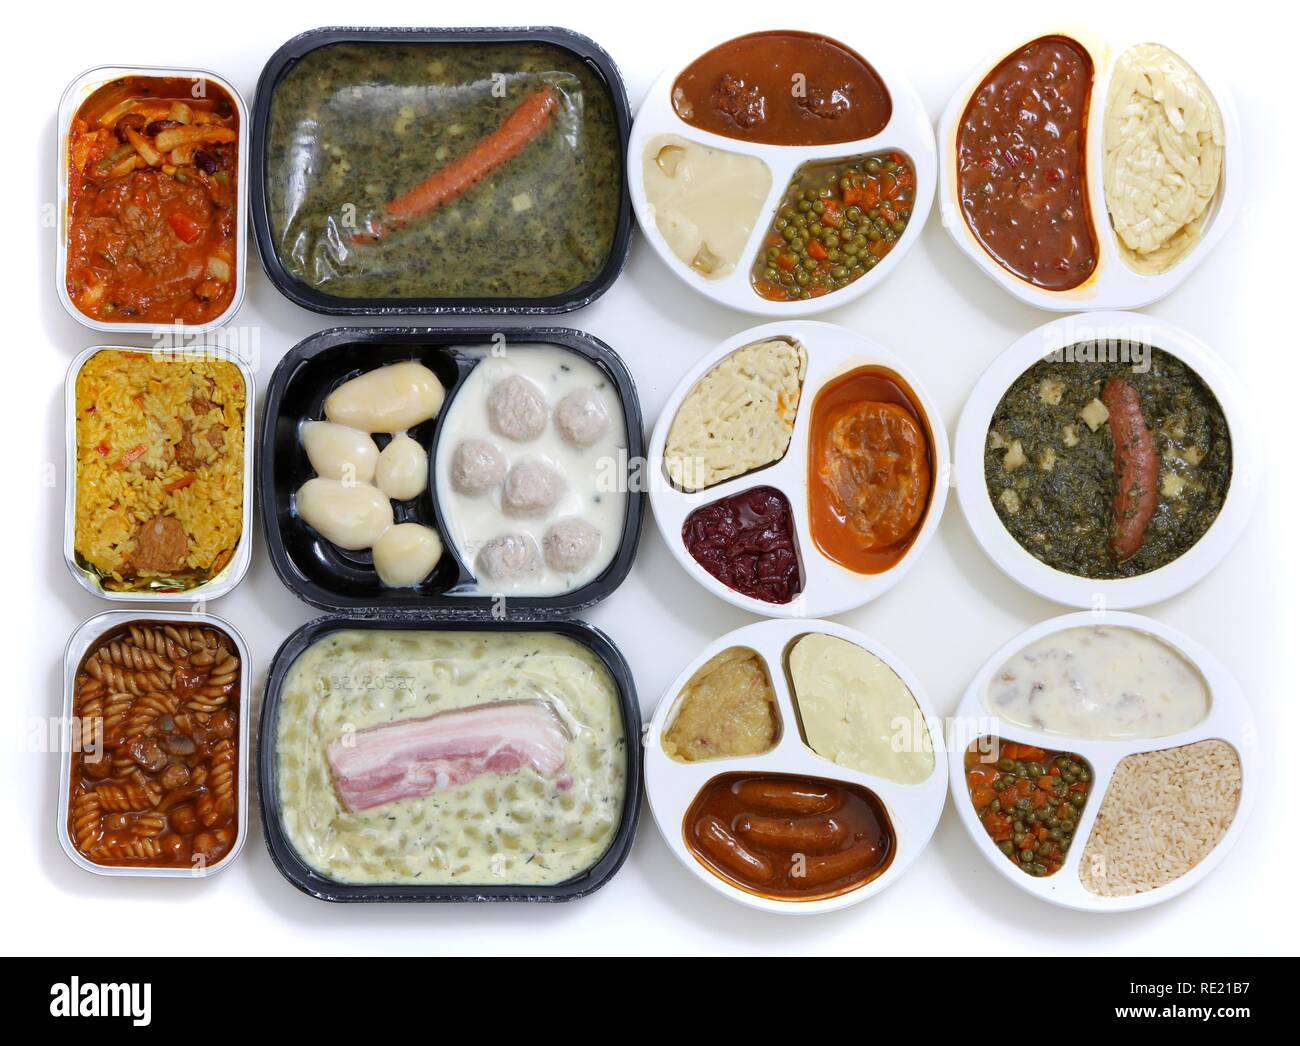 Des repas différents dans des contenants en plastique, pré-cuites, en portions individuelles pour une personne Banque D'Images